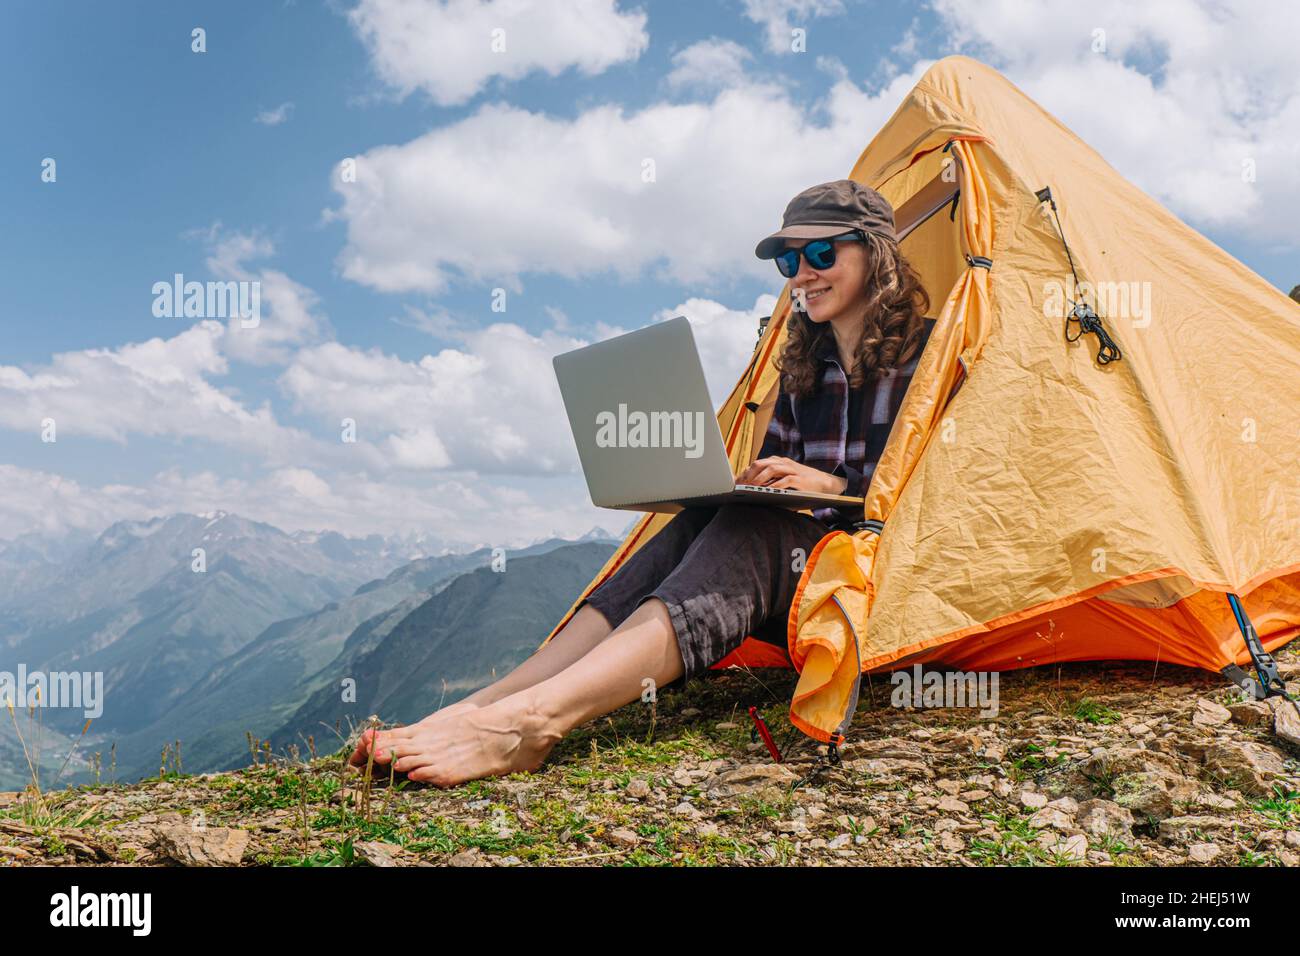 Una donna freelance felice sta lavorando ad un laptop in una tenda arancione alta nelle montagne in una giornata estiva soleggiata contro un cielo blu Foto Stock